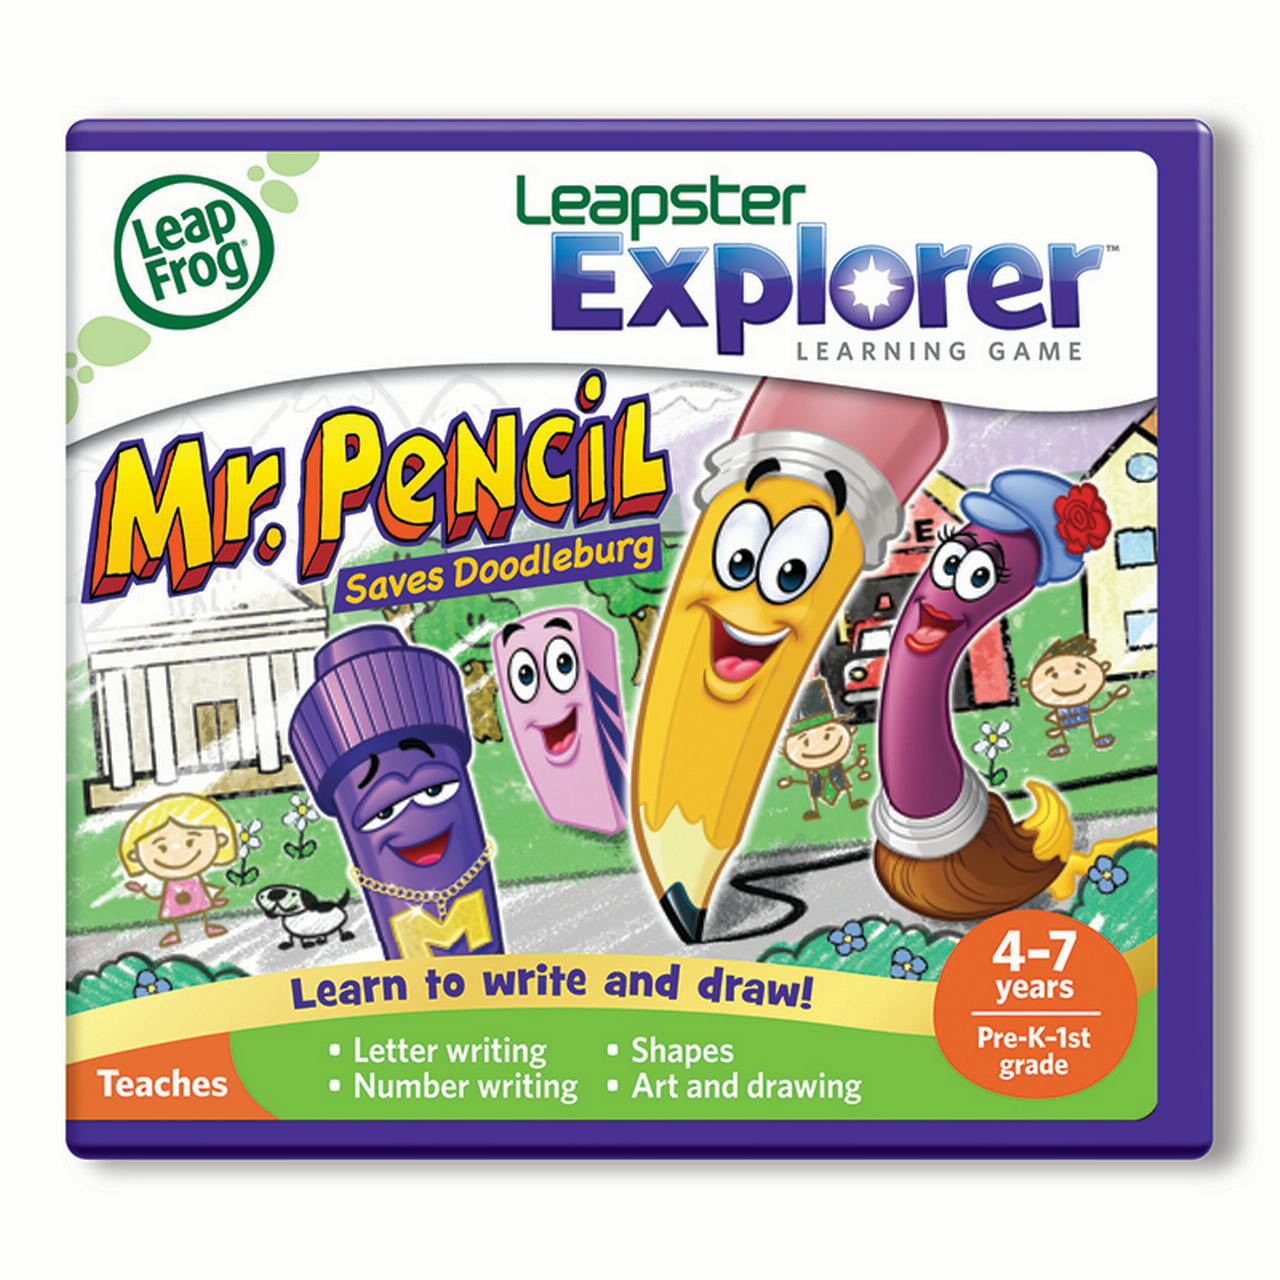 LeapFrog Explorer Learning Game Mr Pencil Saves Doodleburg 39046 for sale online 